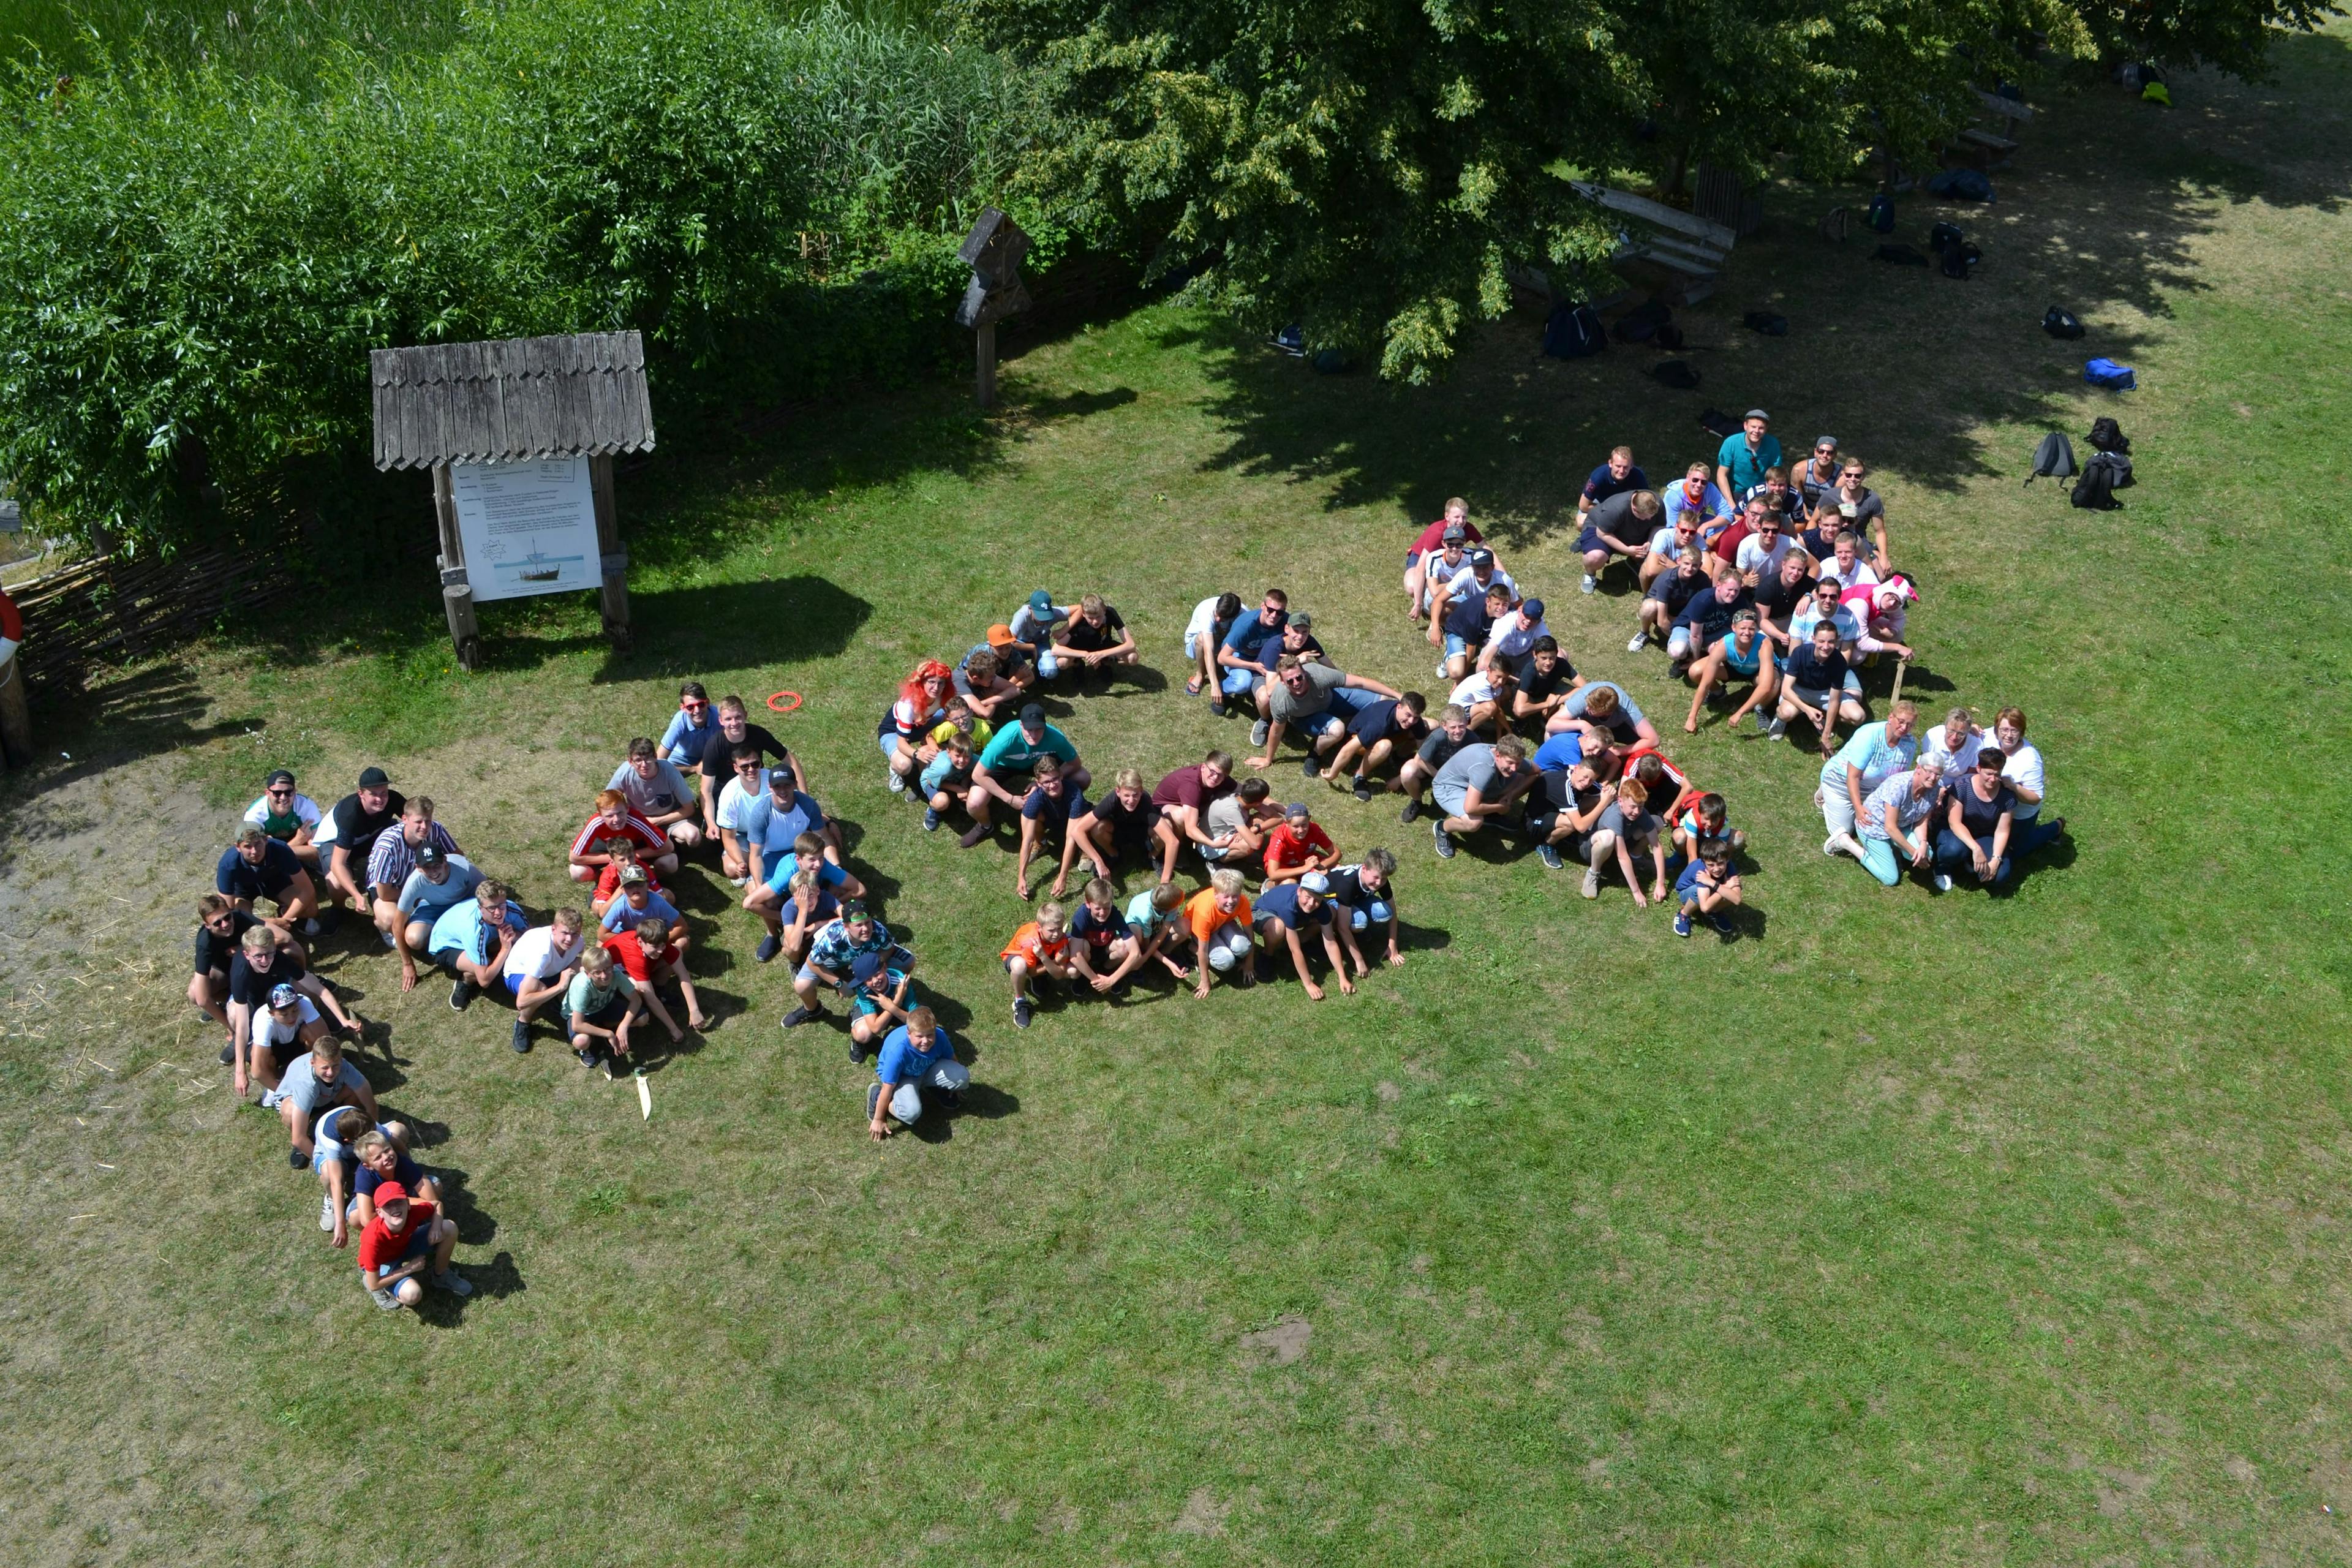 Bild aus dem Messdienerlager 2019 auf dem die Buchstaben "MSV!" aus den Messdienern gebildet wurden